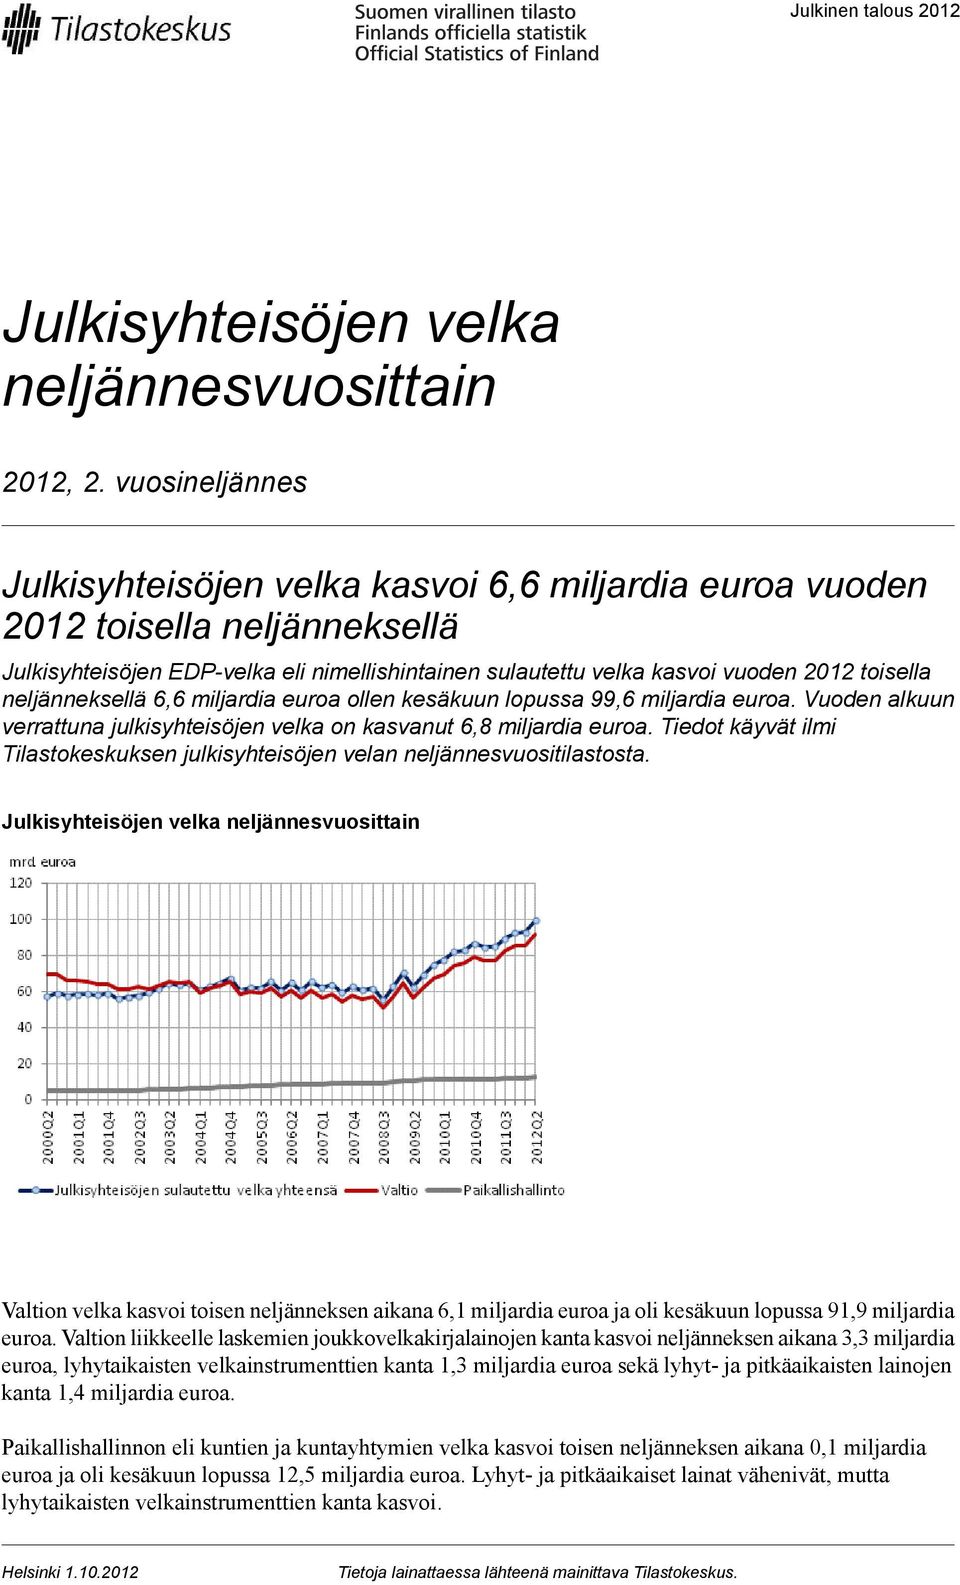 neljänneksellä 6,6 miljardia euroa ollen kesäkuun lopussa 99,6 miljardia euroa. Vuoden alkuun verrattuna julkisyhteisöjen velka on kasvanut 6,8 miljardia euroa.